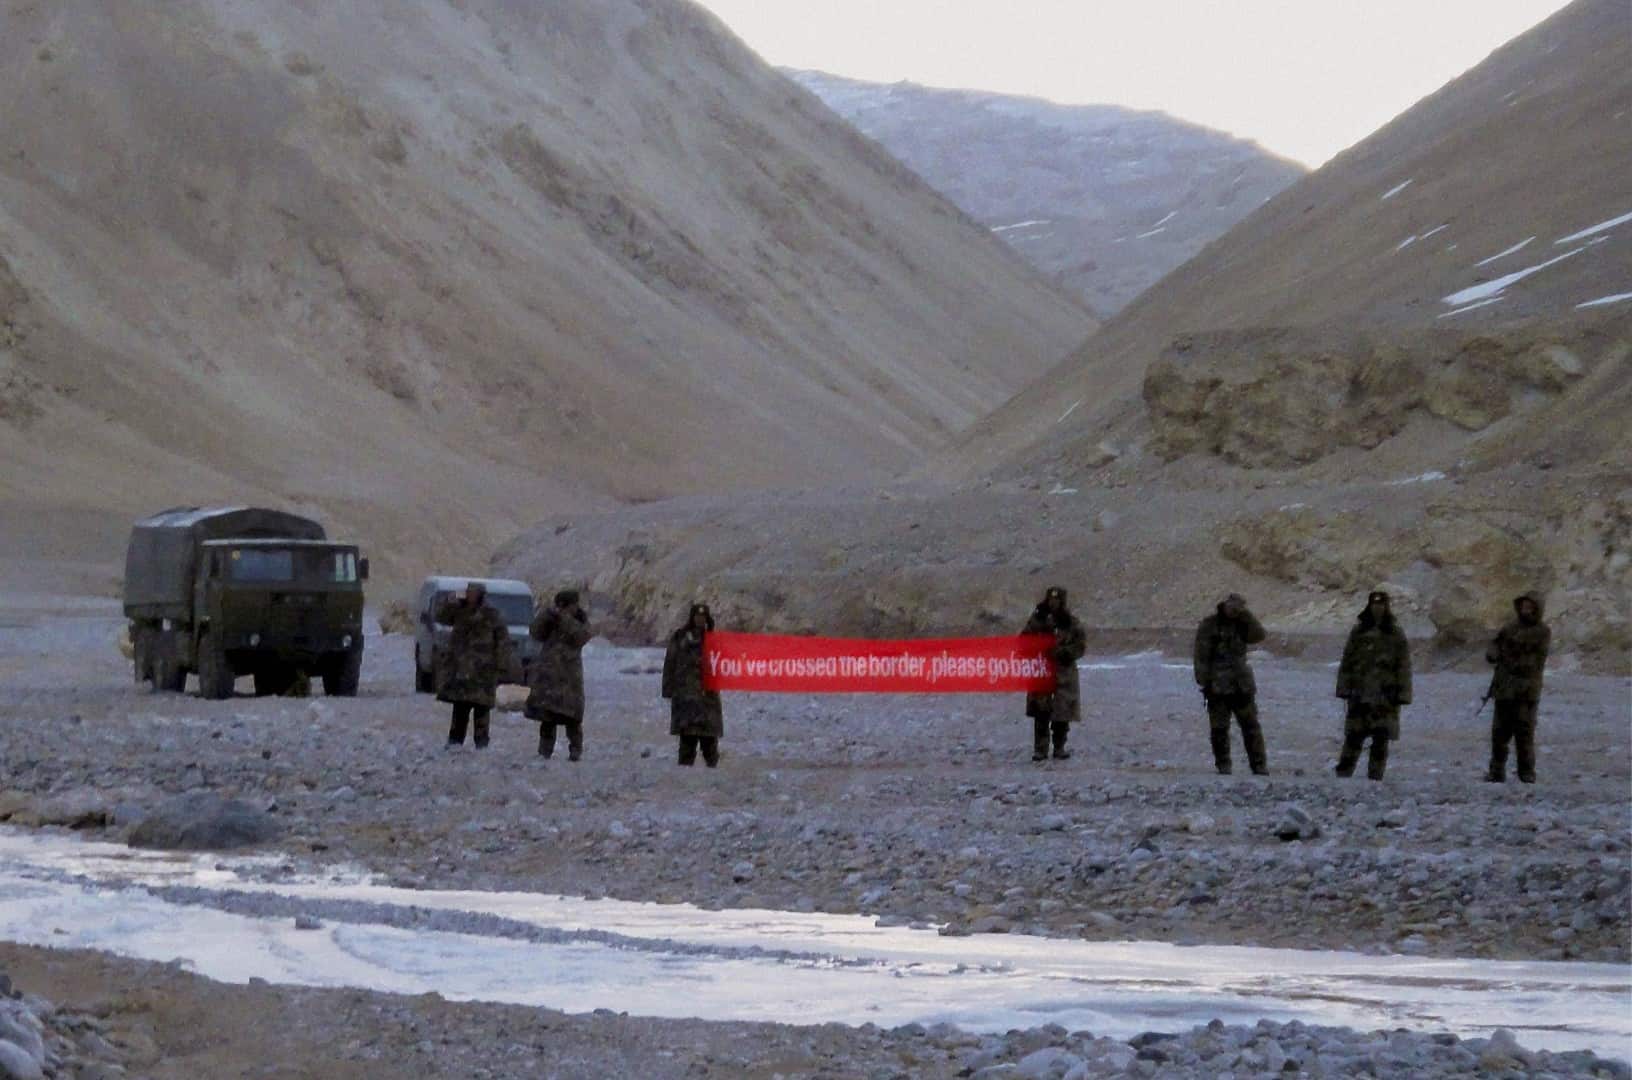 Quân đội Trung Quốc cầm một biểu ngữ có dòng chữ: "Các ông đã vượt qua biên giới, hãy mau quay lại" ở khu vực&nbsp;Ladakh, năm 2013. Ảnh: AP